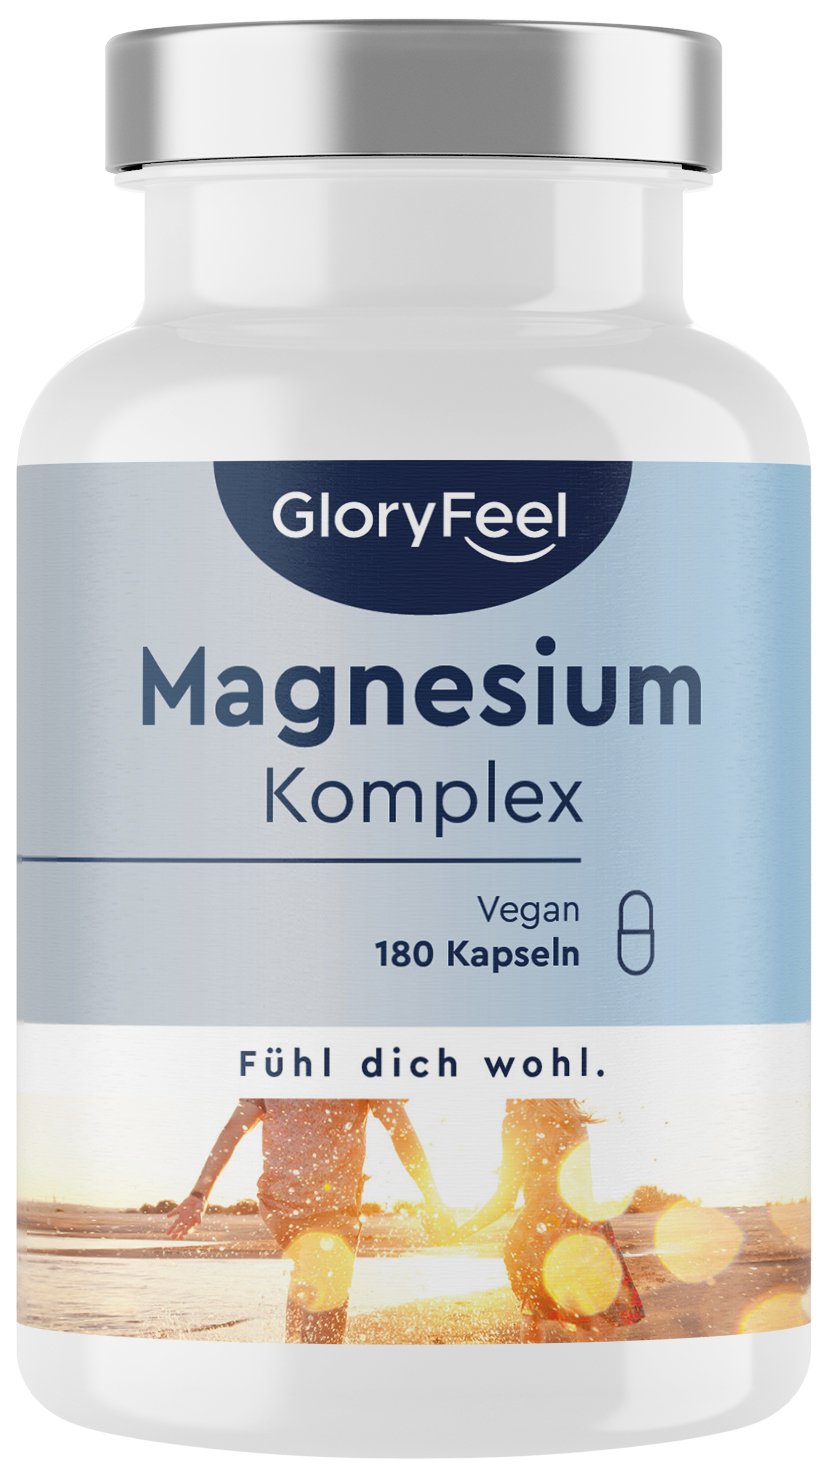 Gloryfeel DE: Magnesium-Komplex aus 5 Verbindungen -30% Rabatt